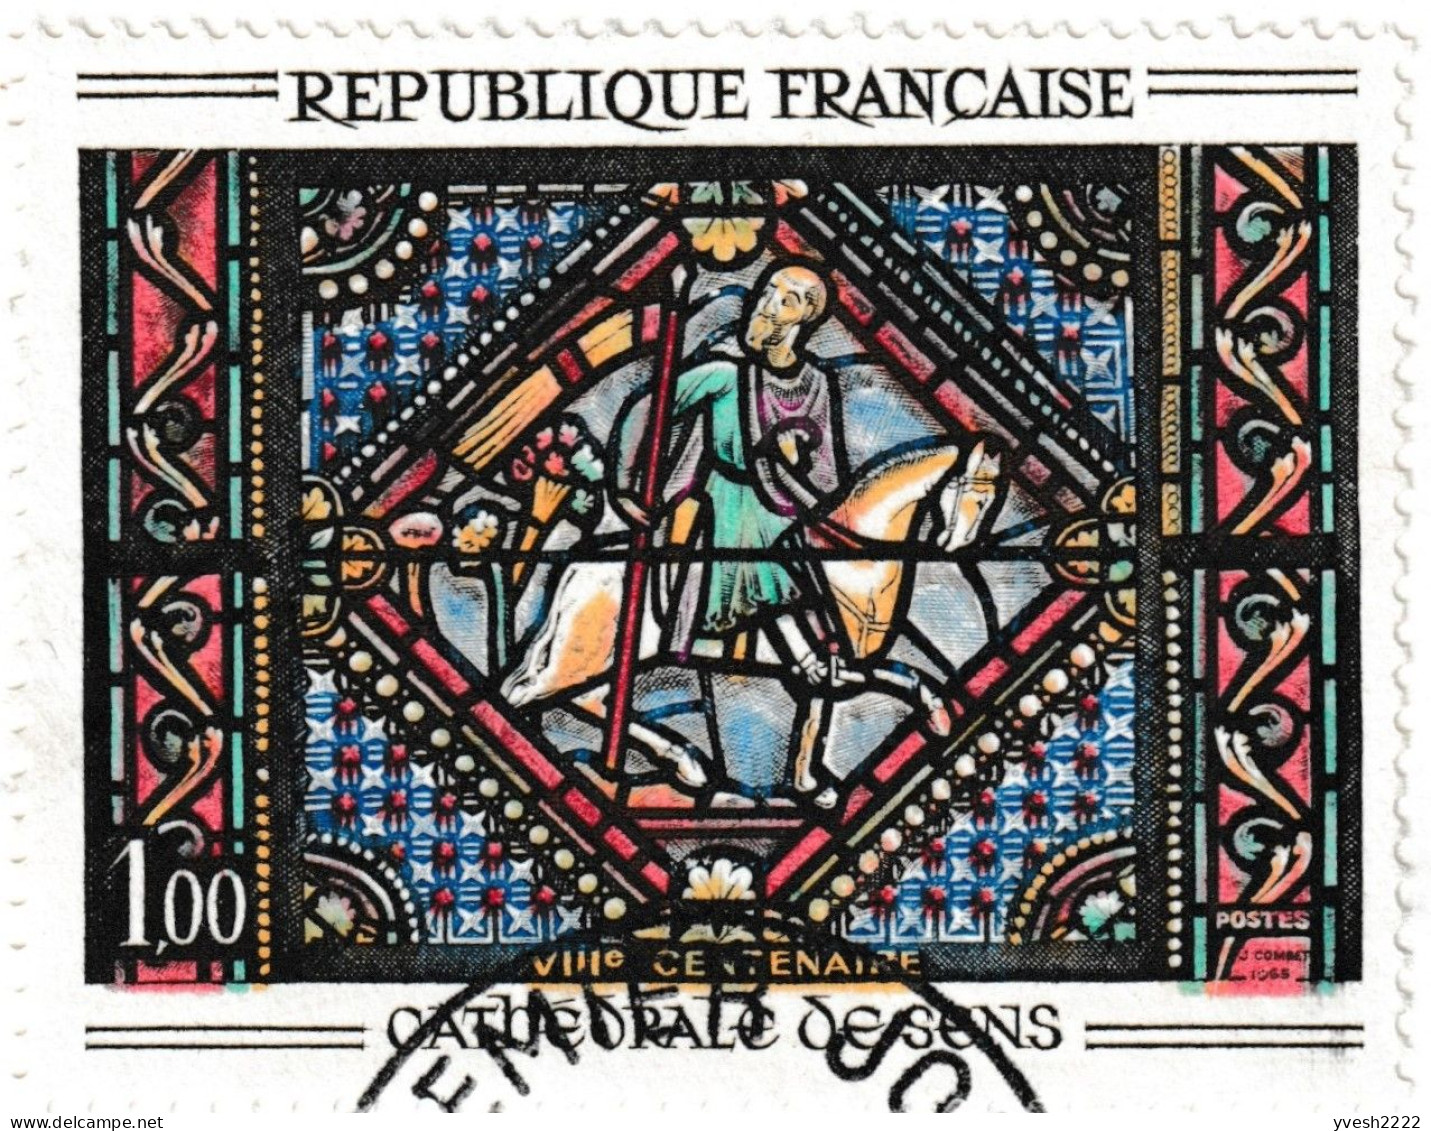 France 1965 Y&T 1427e et 1427f. 3 cartes maximum, curiosités d'impression. Vitrail de la cathédrale de Sens